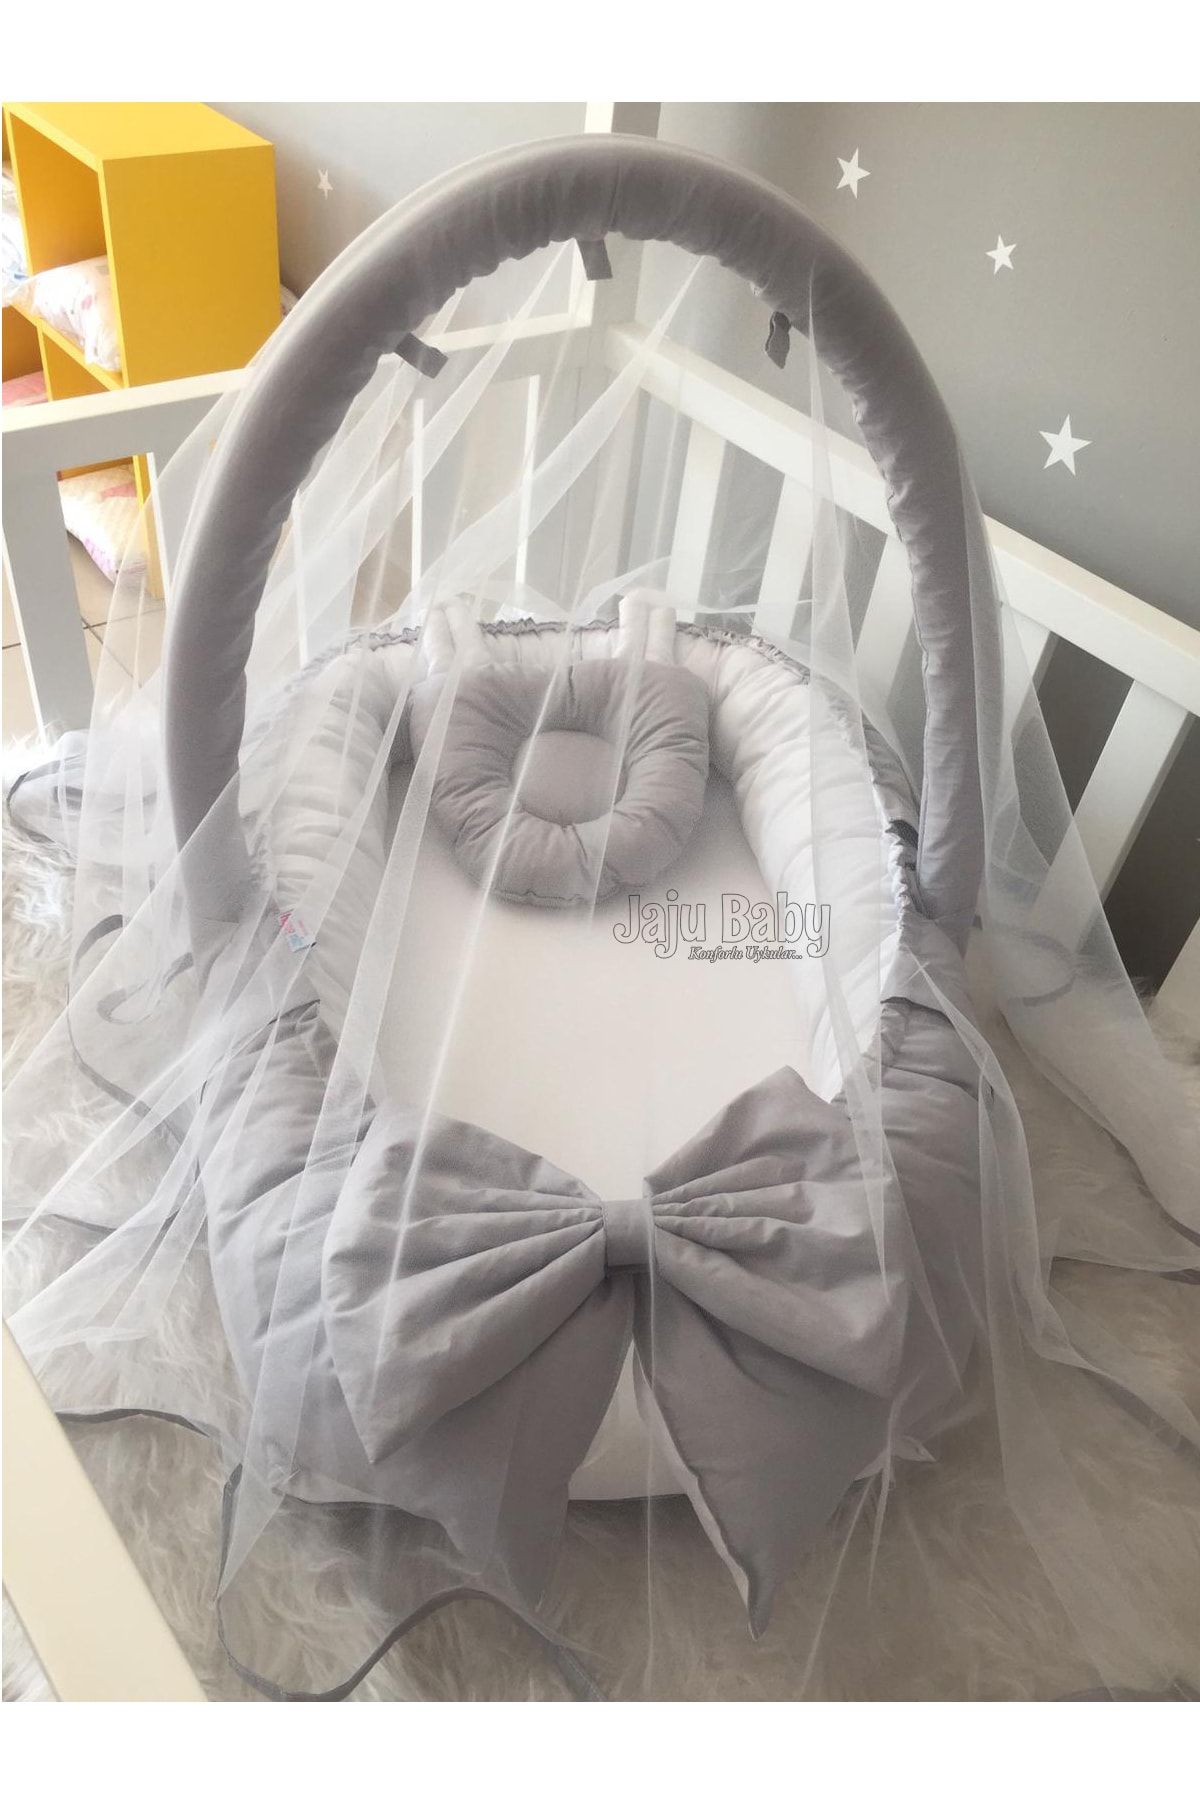 Jaju Baby Nest Gri Cibinlik Ve Oyuncak Askılı Lüx Tasarım Jaju-babynest Bebek Yatağı